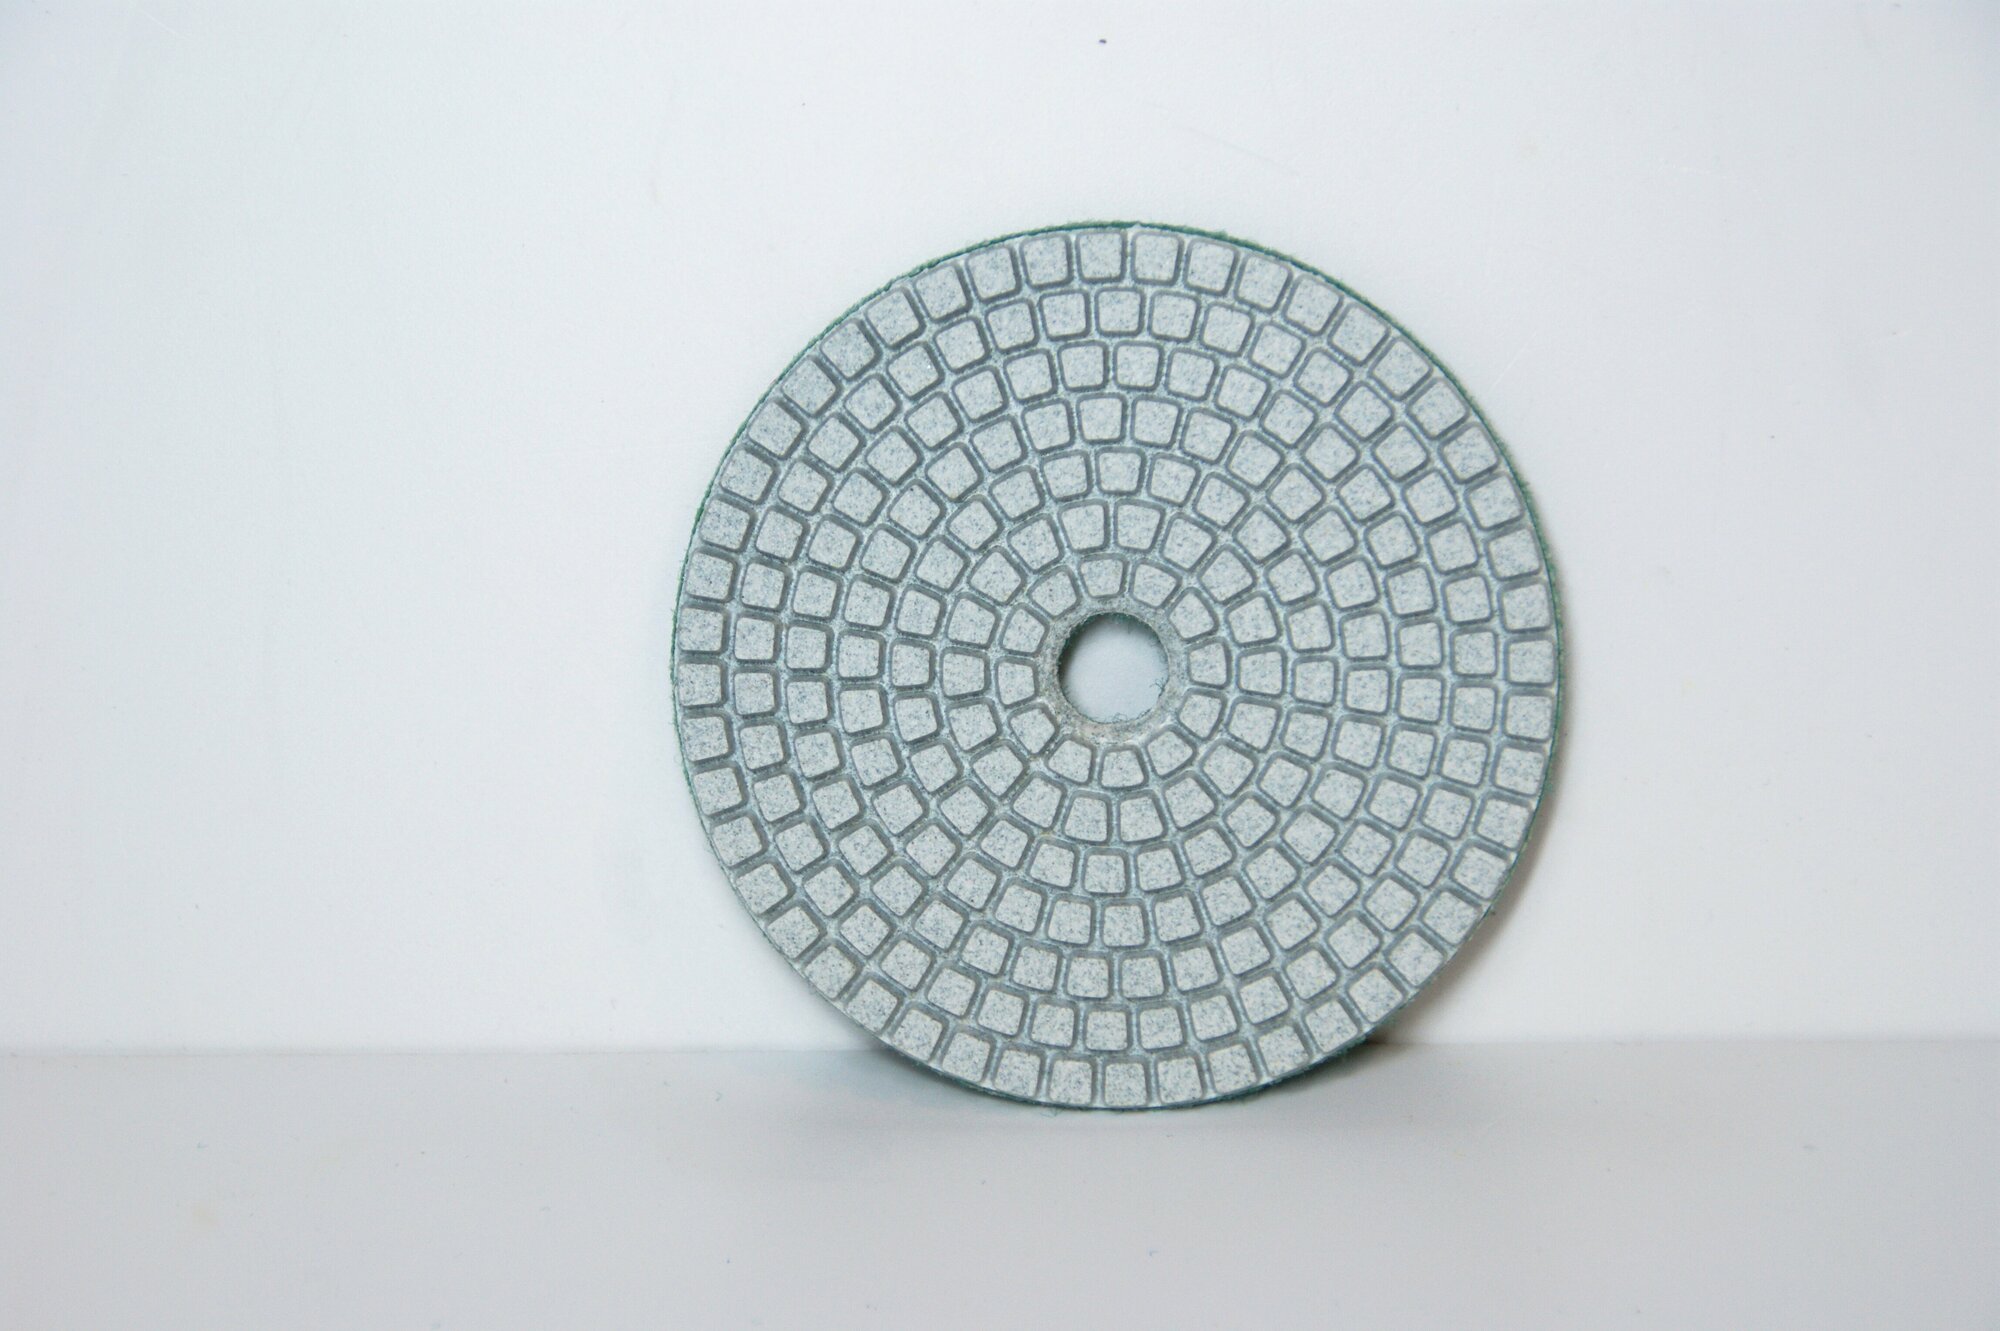 Алмазный гибкий шлифовальный круг АГШК для влажной шлифовки 100мм №80 (черепашка) Strong (1 шт.)